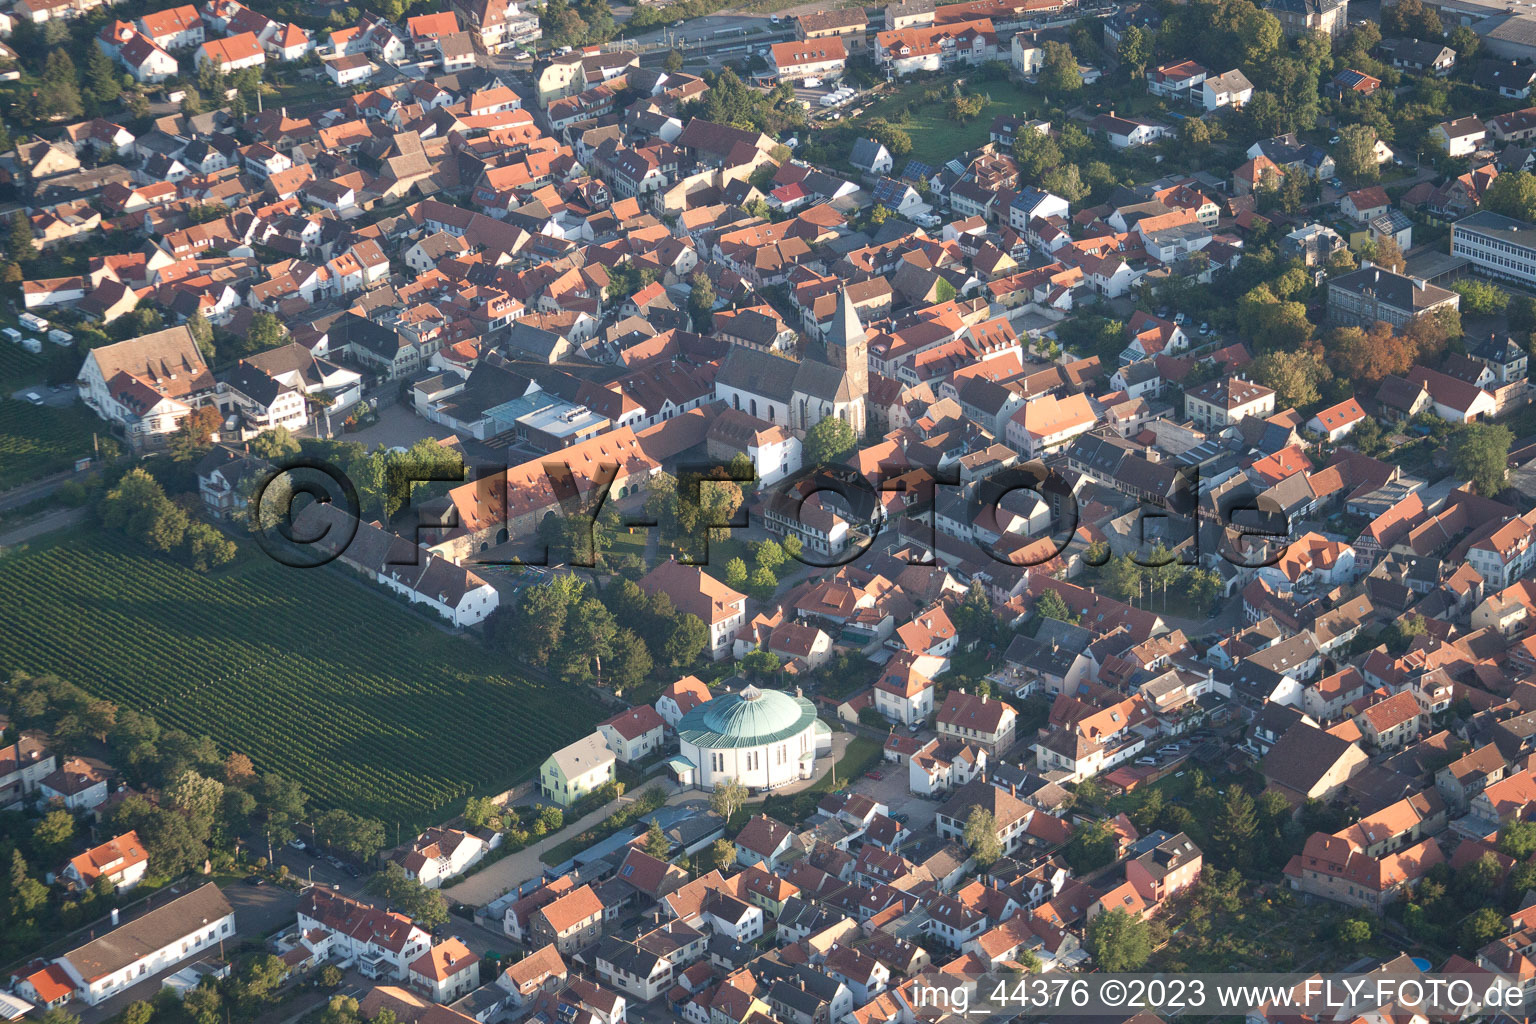 Ortsteil Mußbach in Neustadt an der Weinstraße im Bundesland Rheinland-Pfalz, Deutschland aus der Luft betrachtet